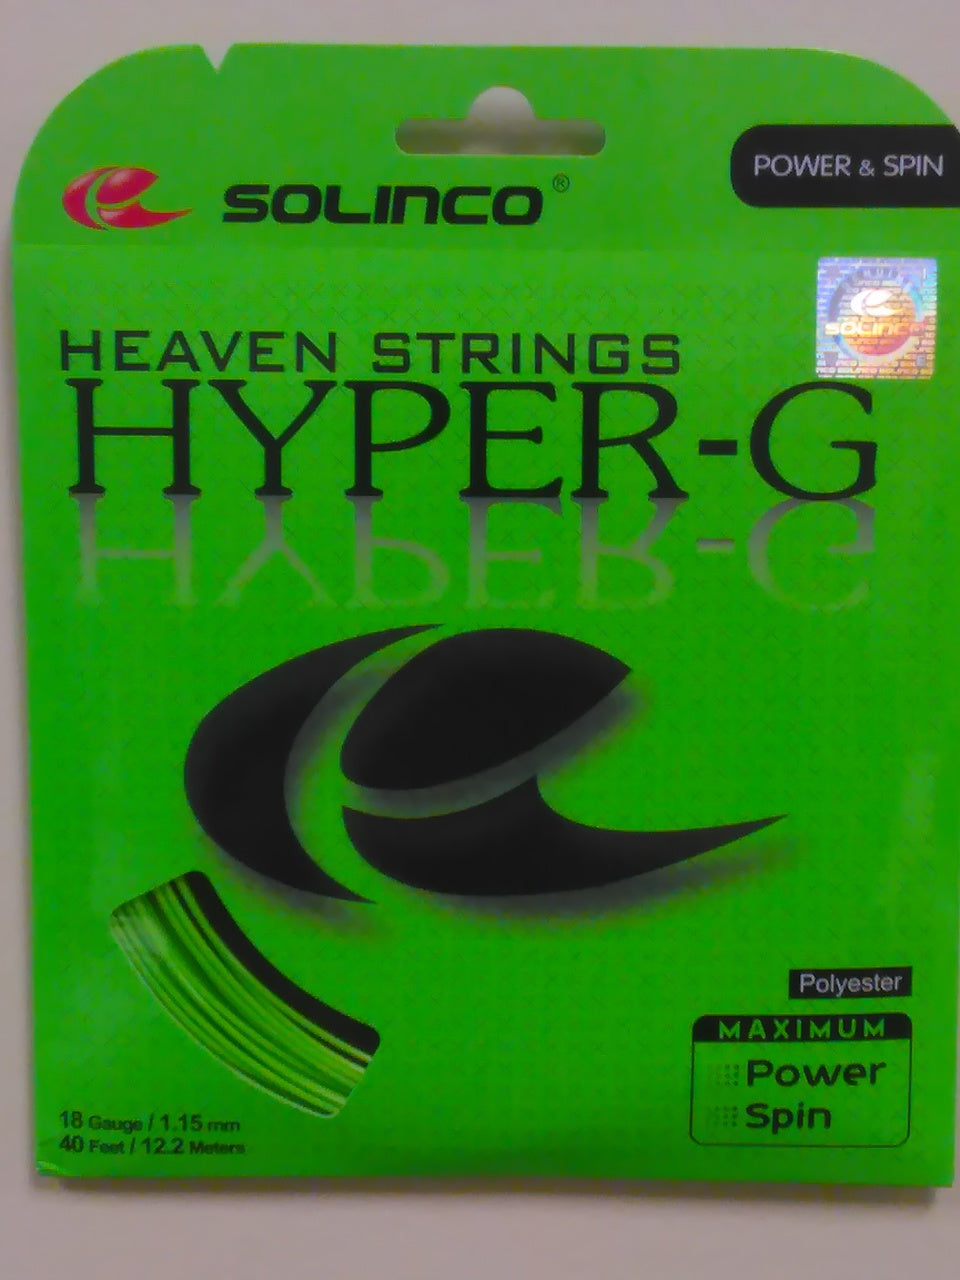 Solinco Heaven Strings Hyper-G Tennis String Set-18g/1.15mm